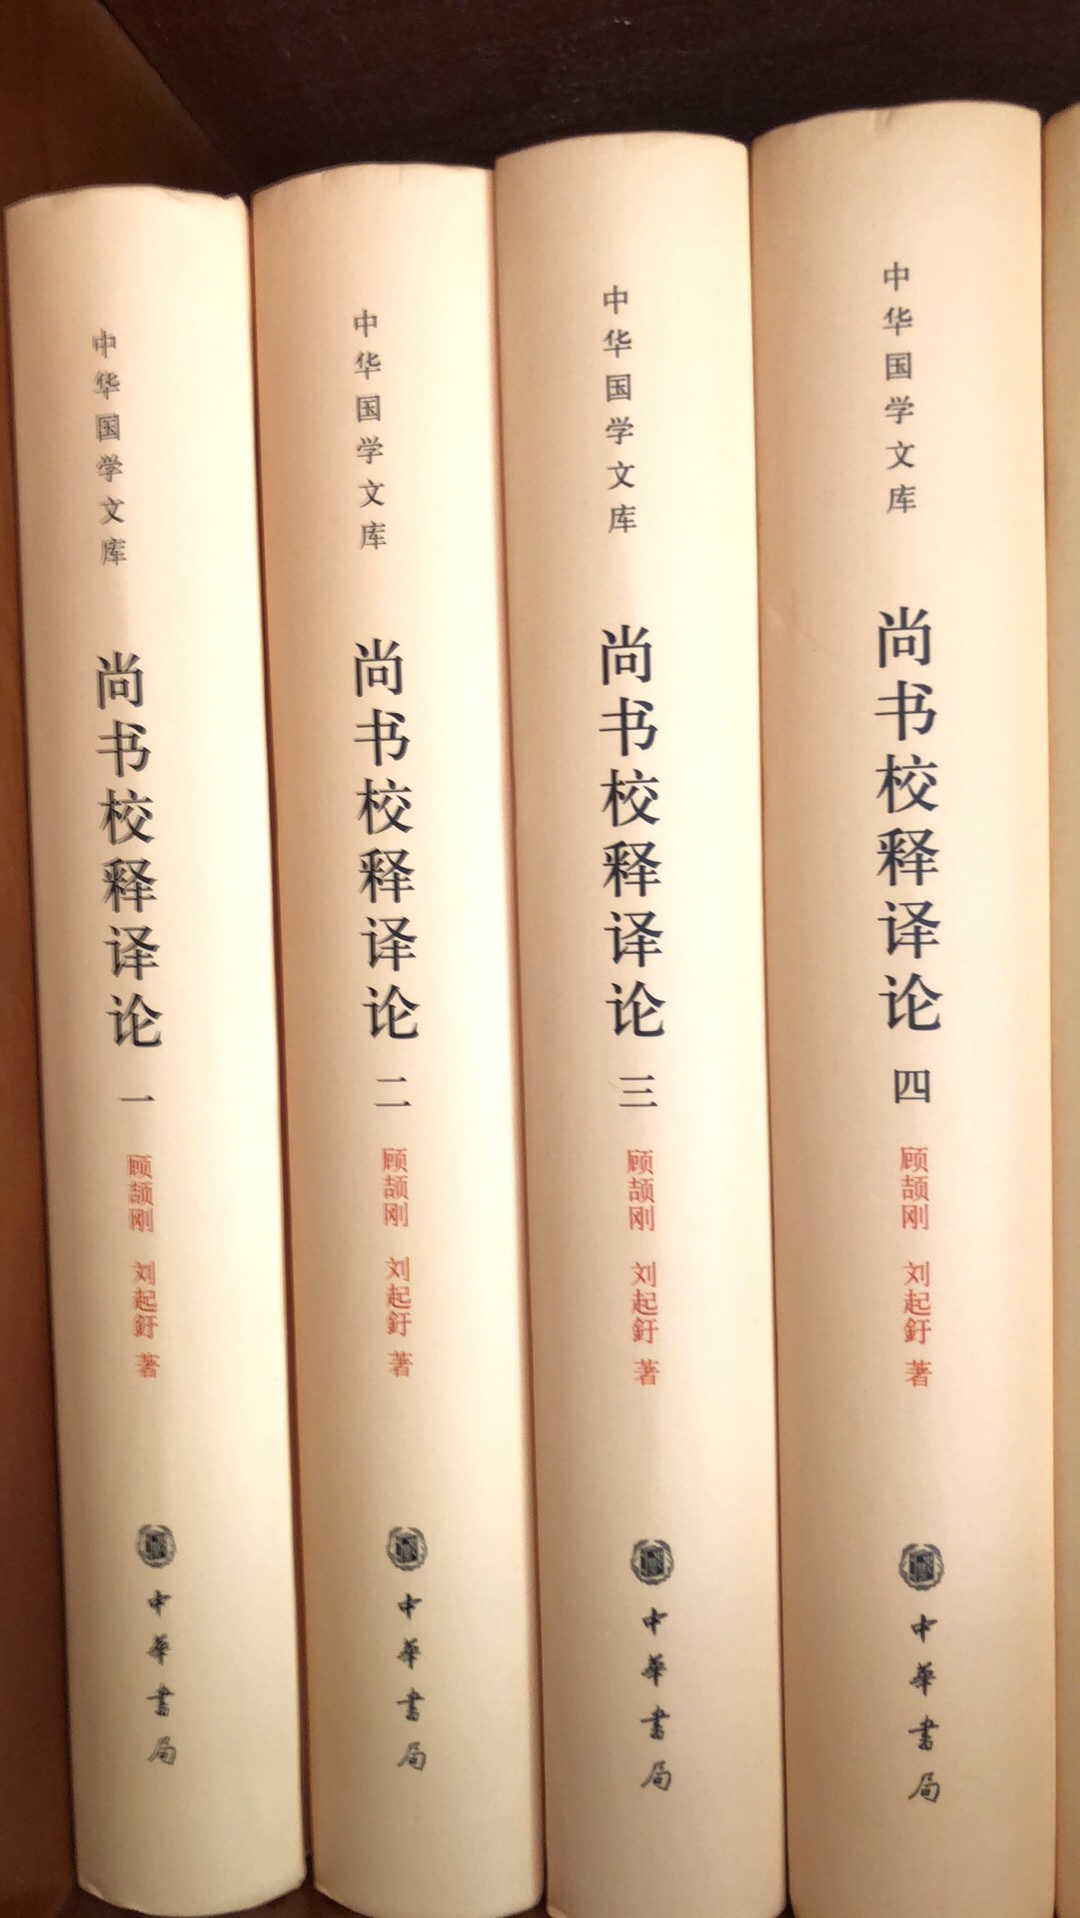 一直追这个书系！简体横排，精装四册。是刘老先生积三十年的功力写成，应该是目前巜尚书》研究最详瞻的一部了，错不了！